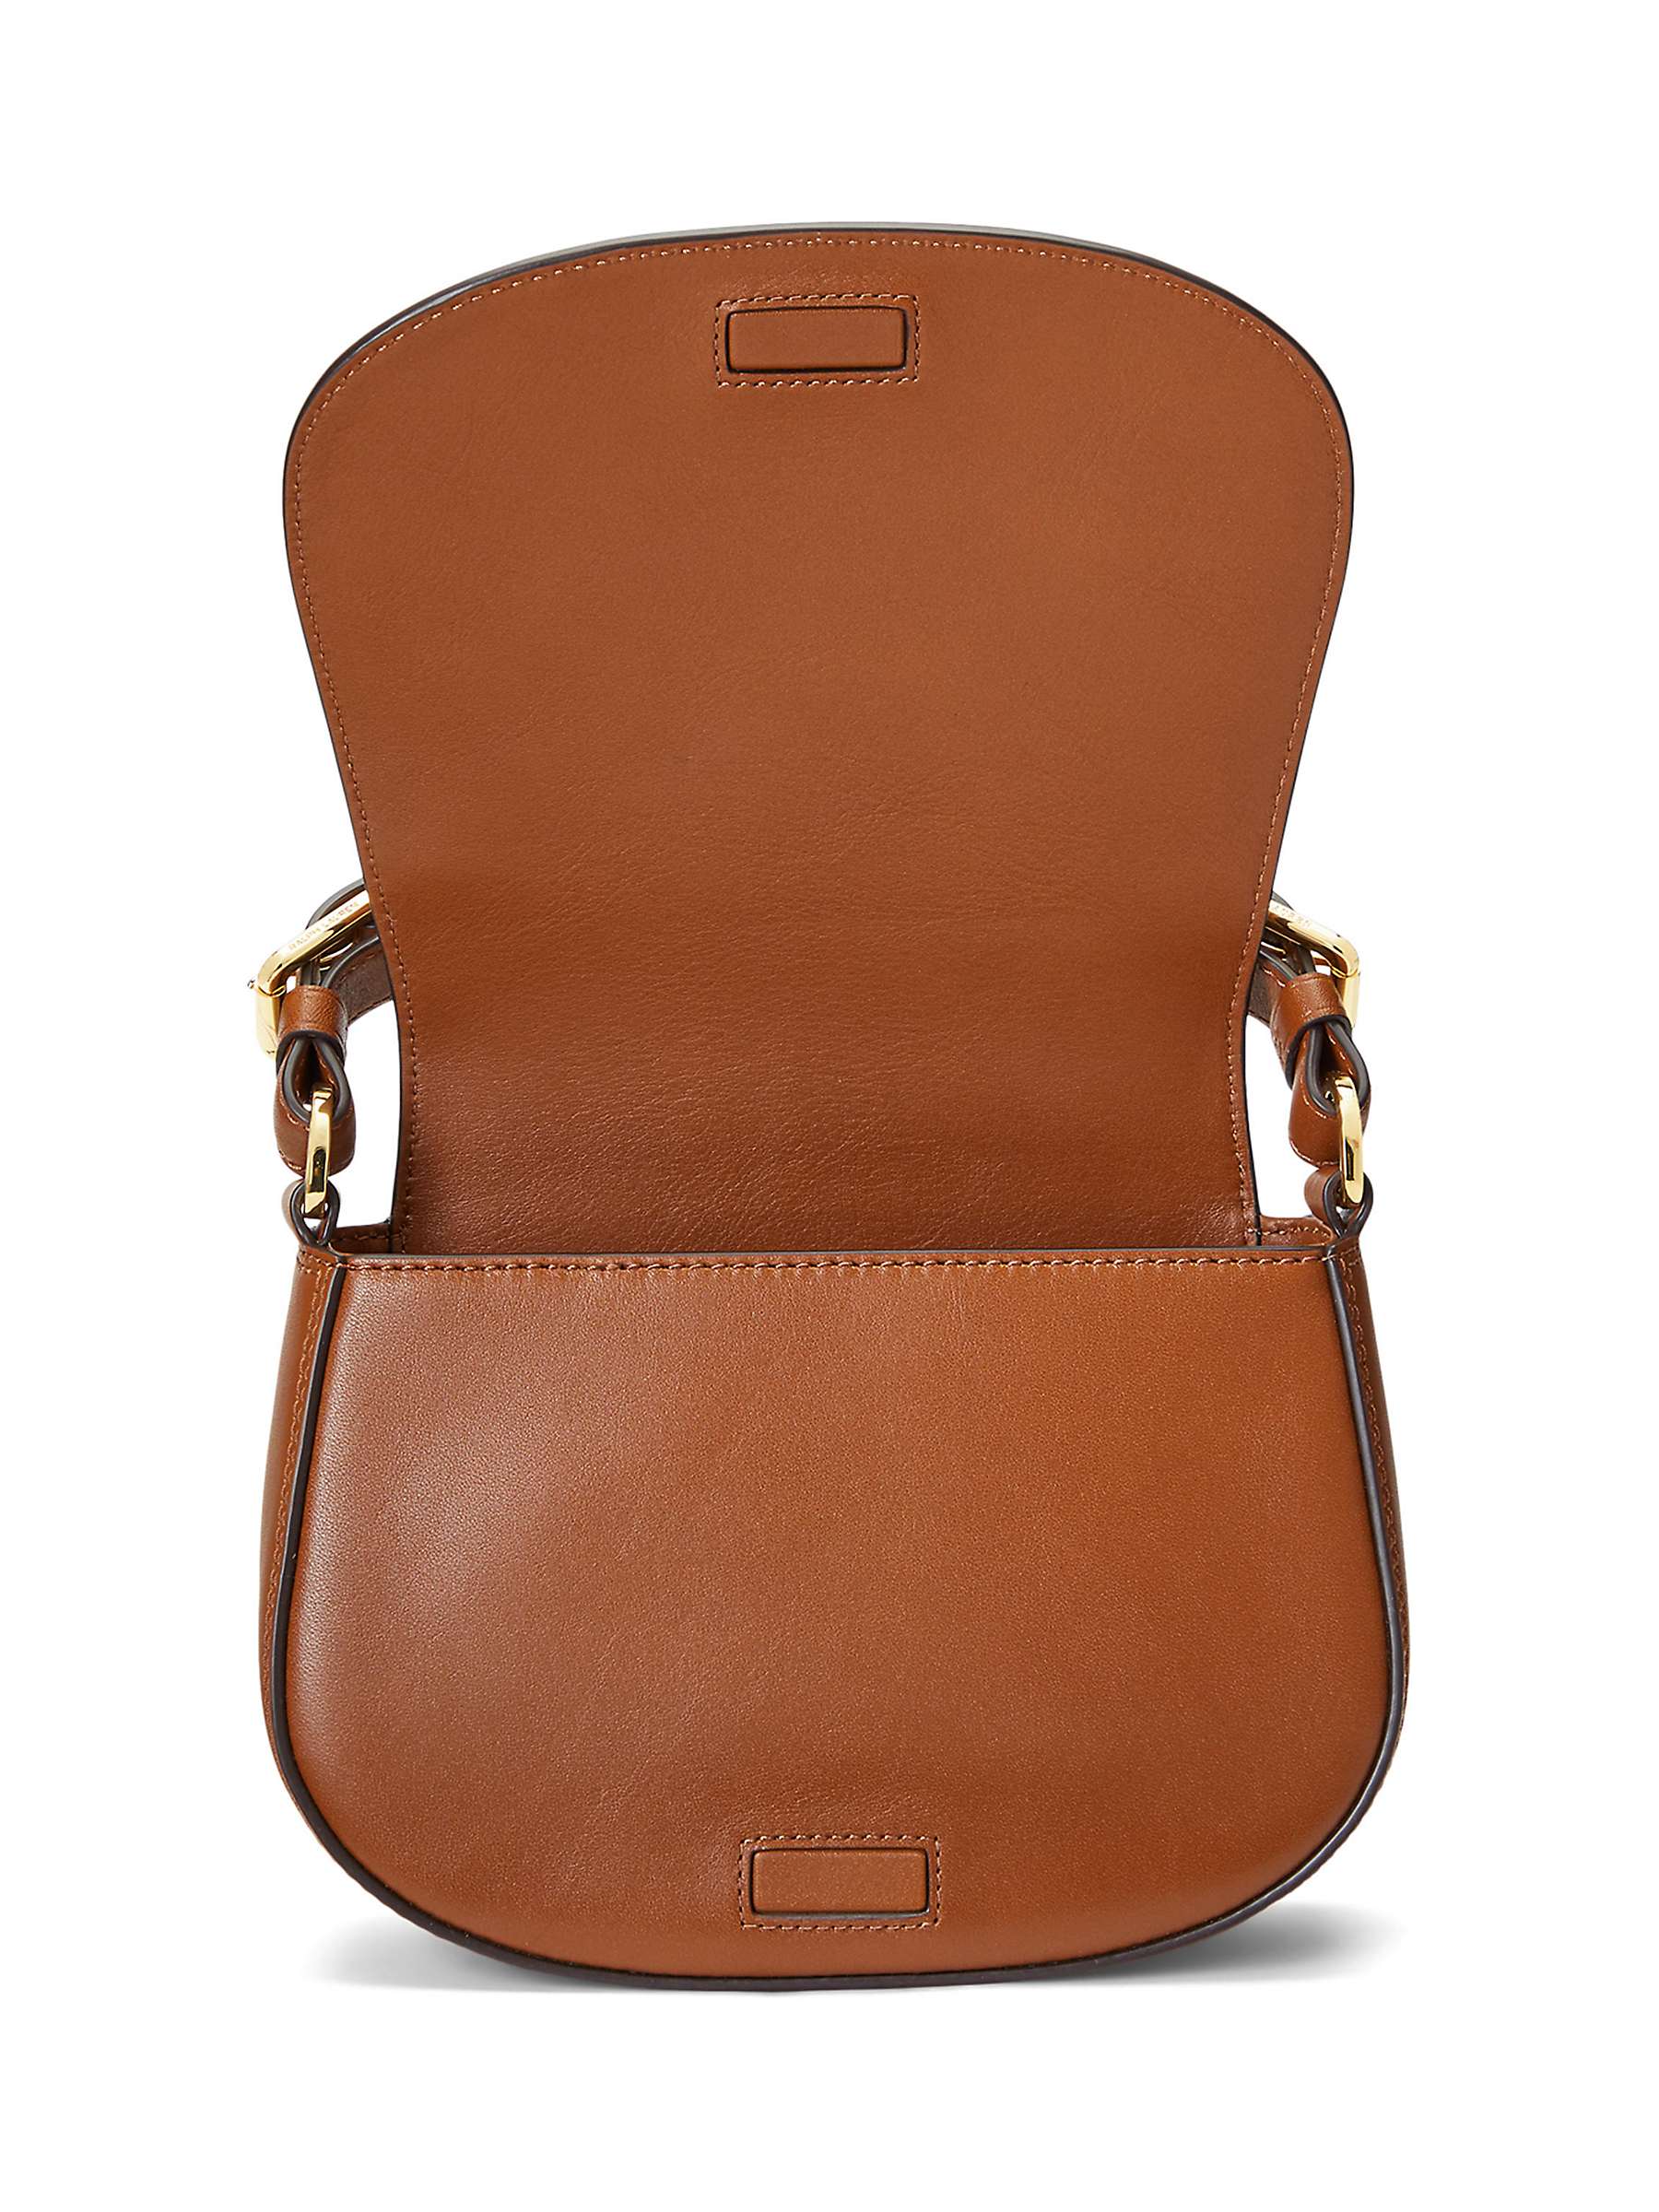 Buy Lauren Ralph Lauren Tanner Leather Cross Body Bag Online at johnlewis.com